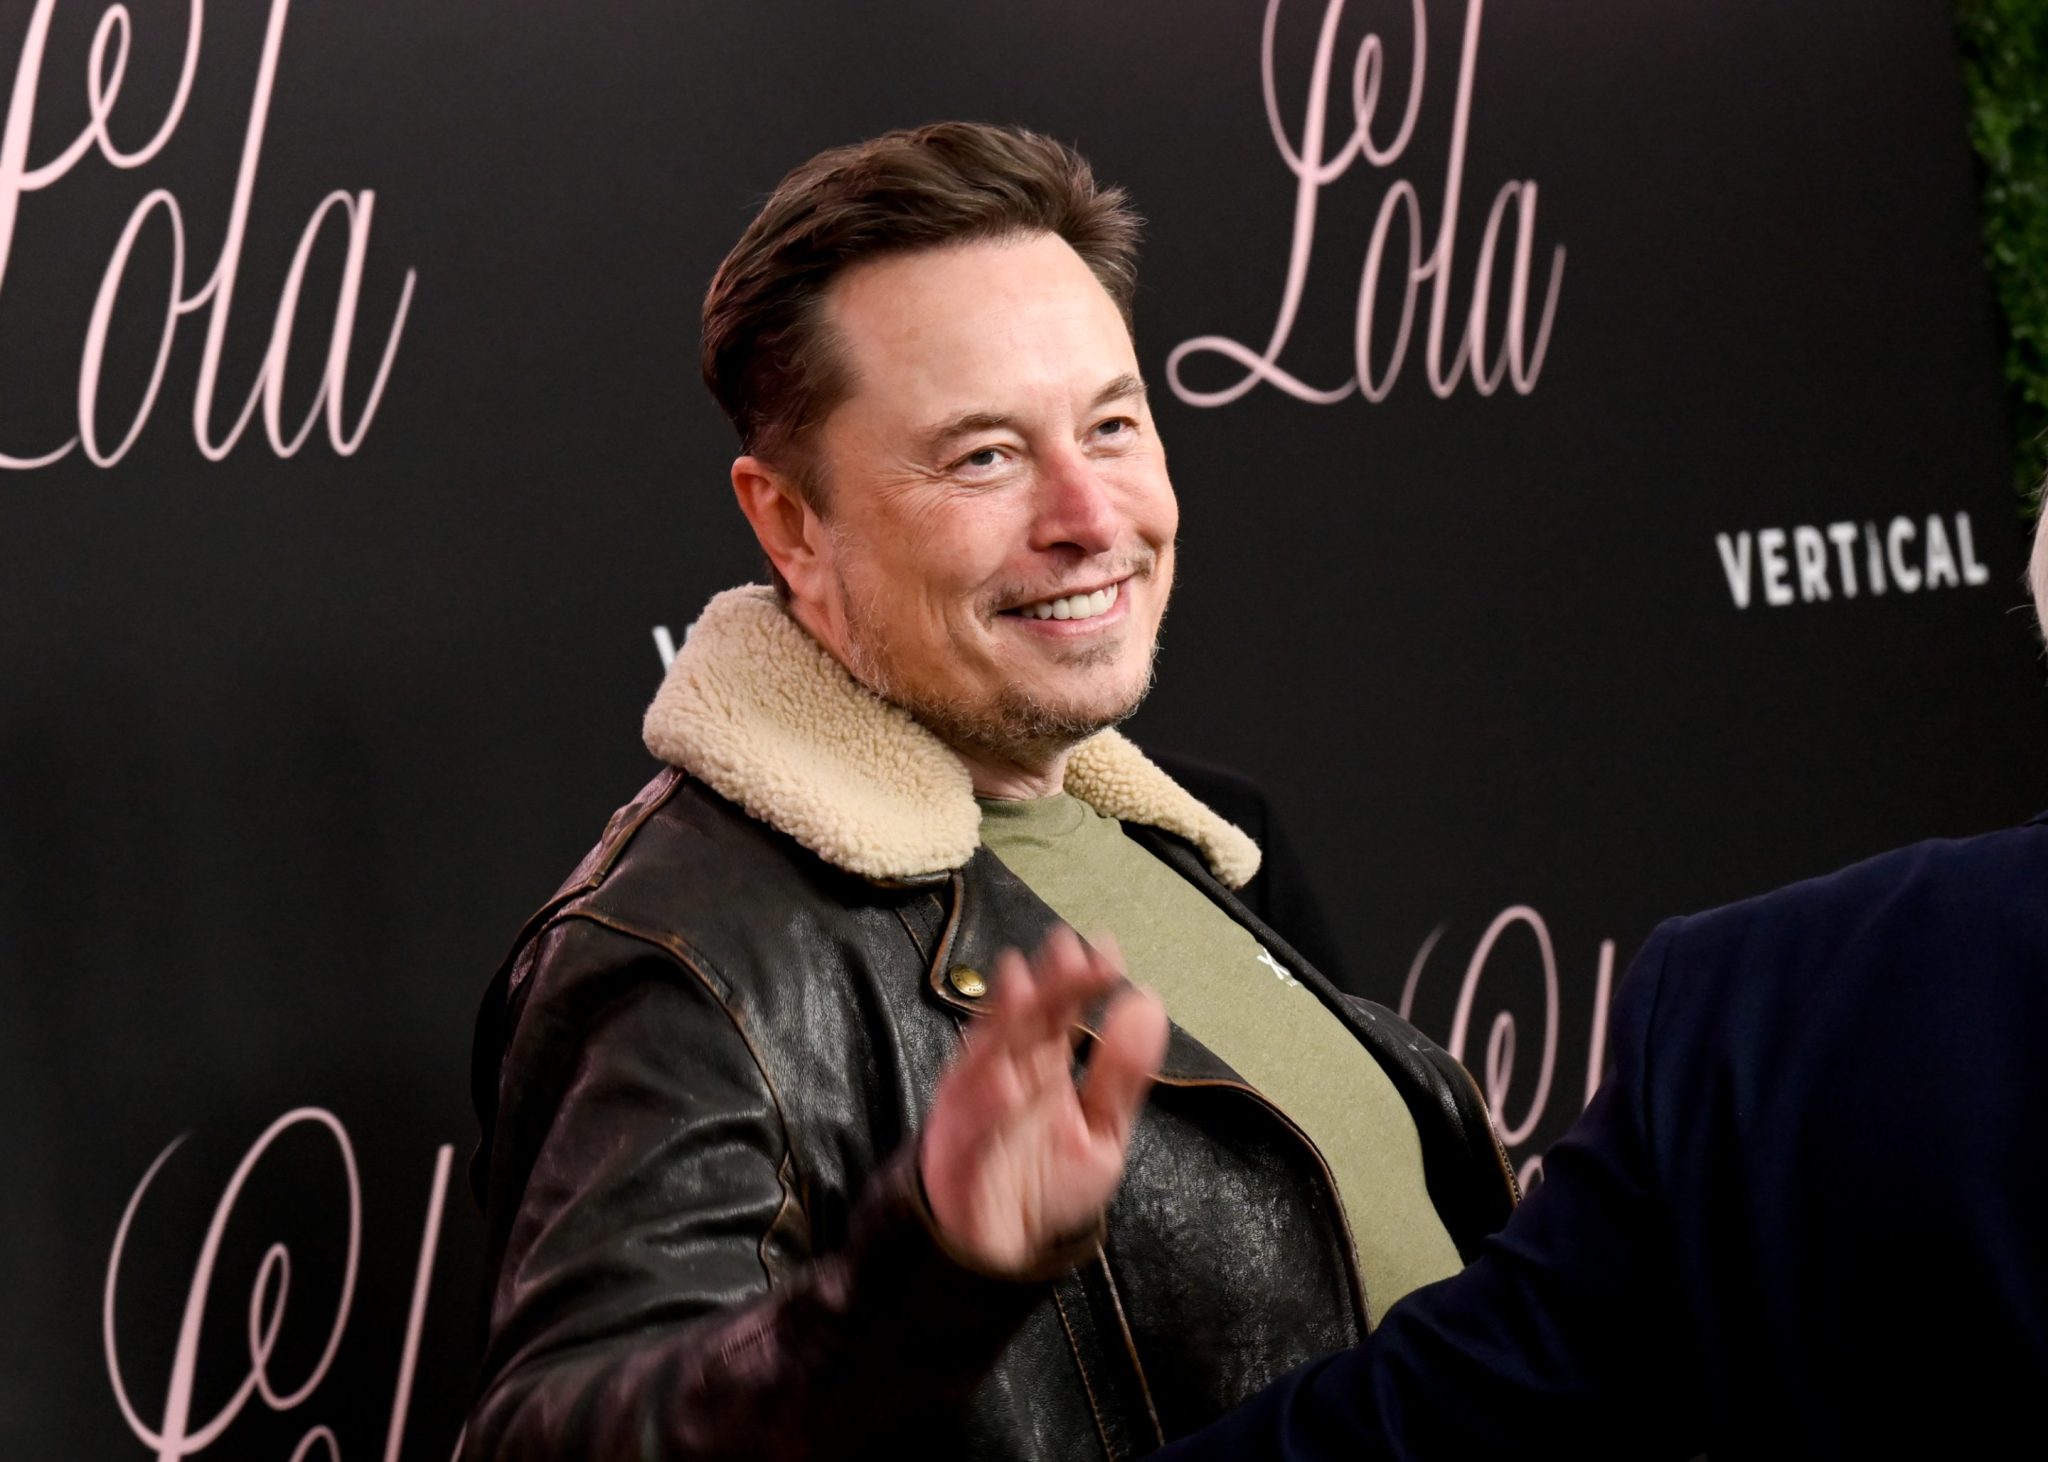 Elon Musk weighs in on U.S. national debt debate